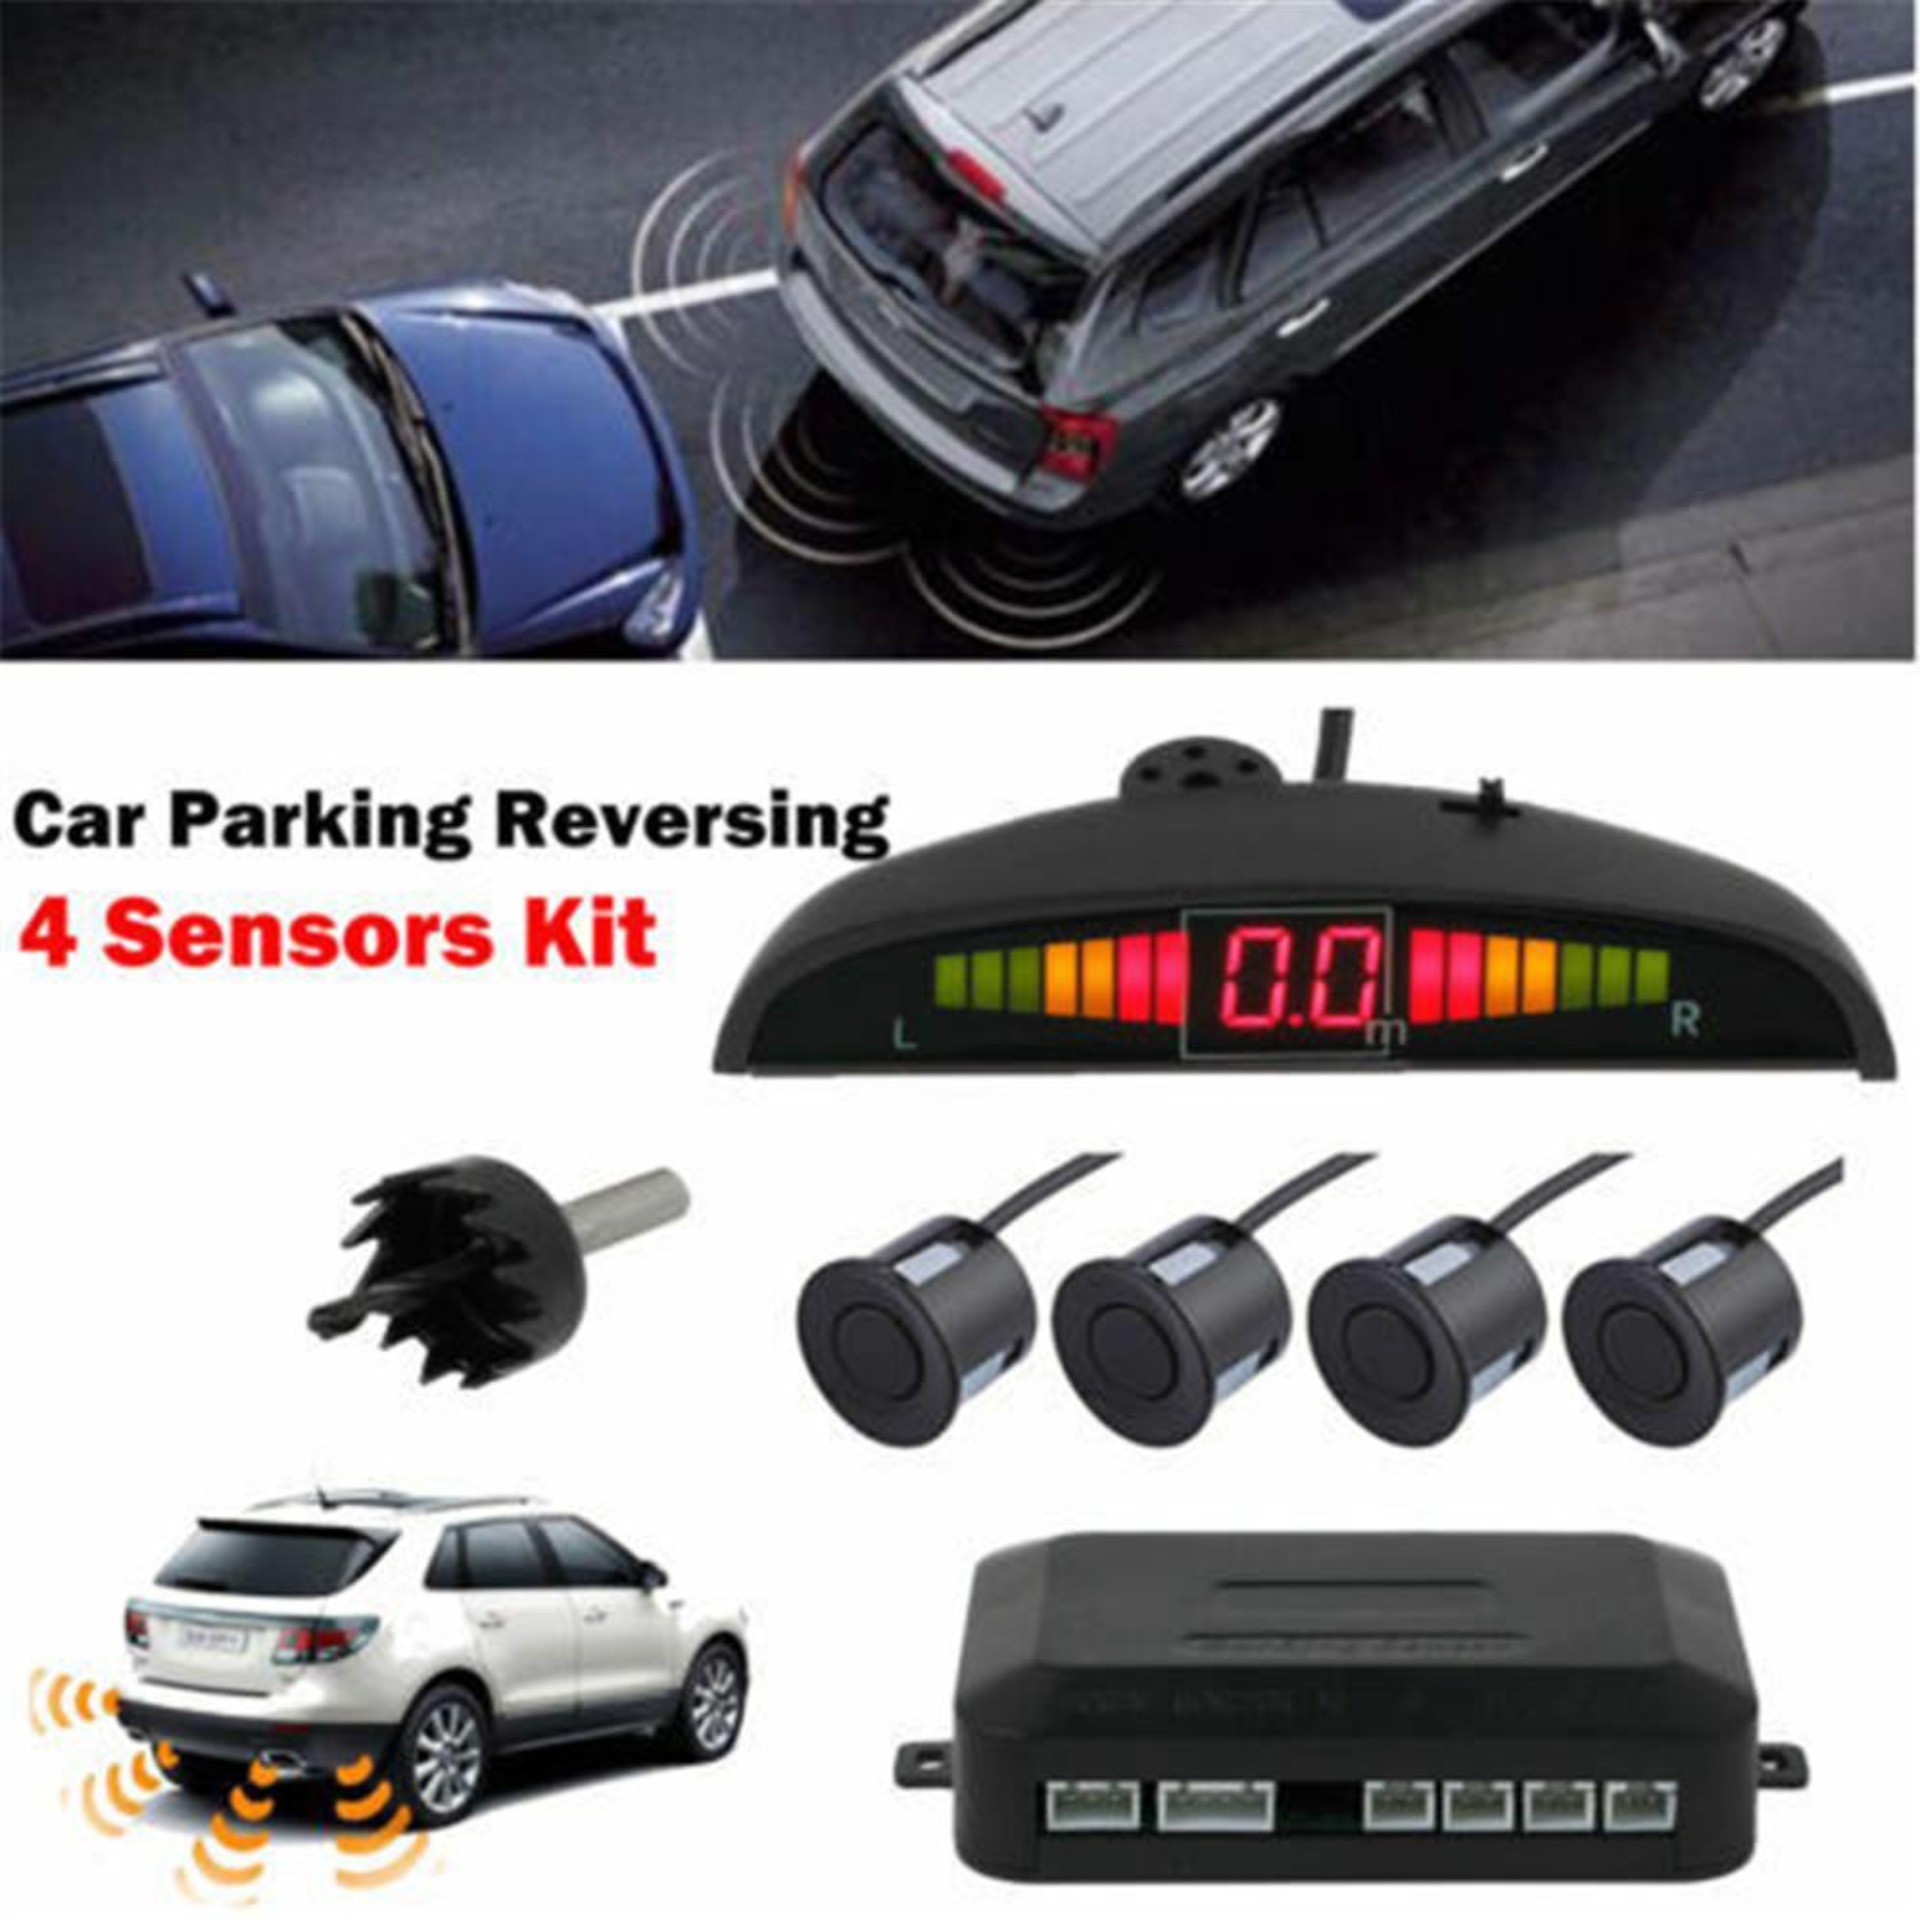 MA Car Parking Rear Reversing Sensors 4 Sensors Kit Audio Buzzer Alarm LED Display